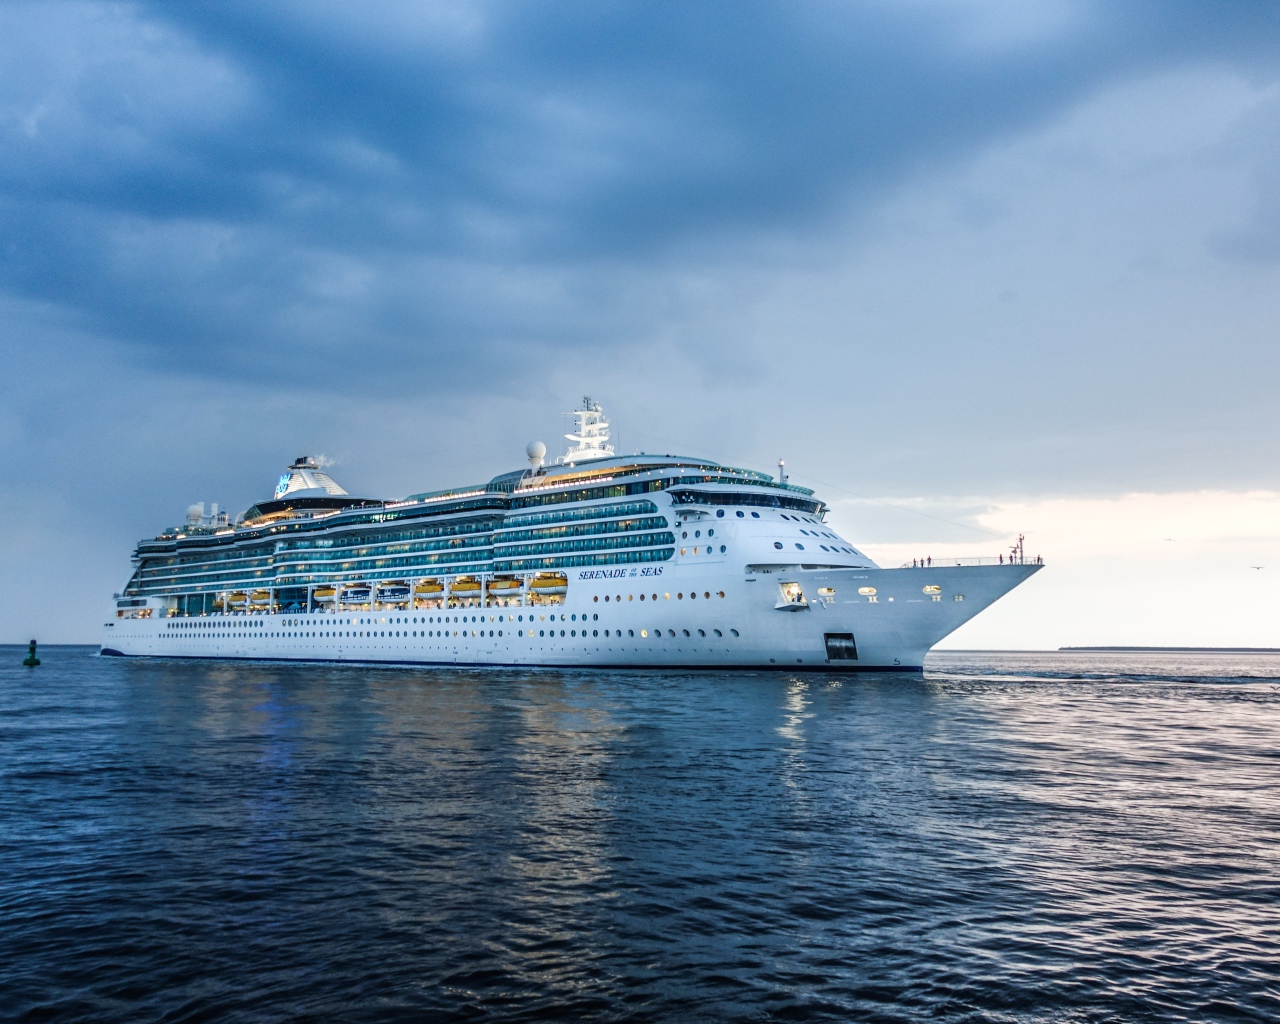 Large cruise ship Serenade of the Seas at sea